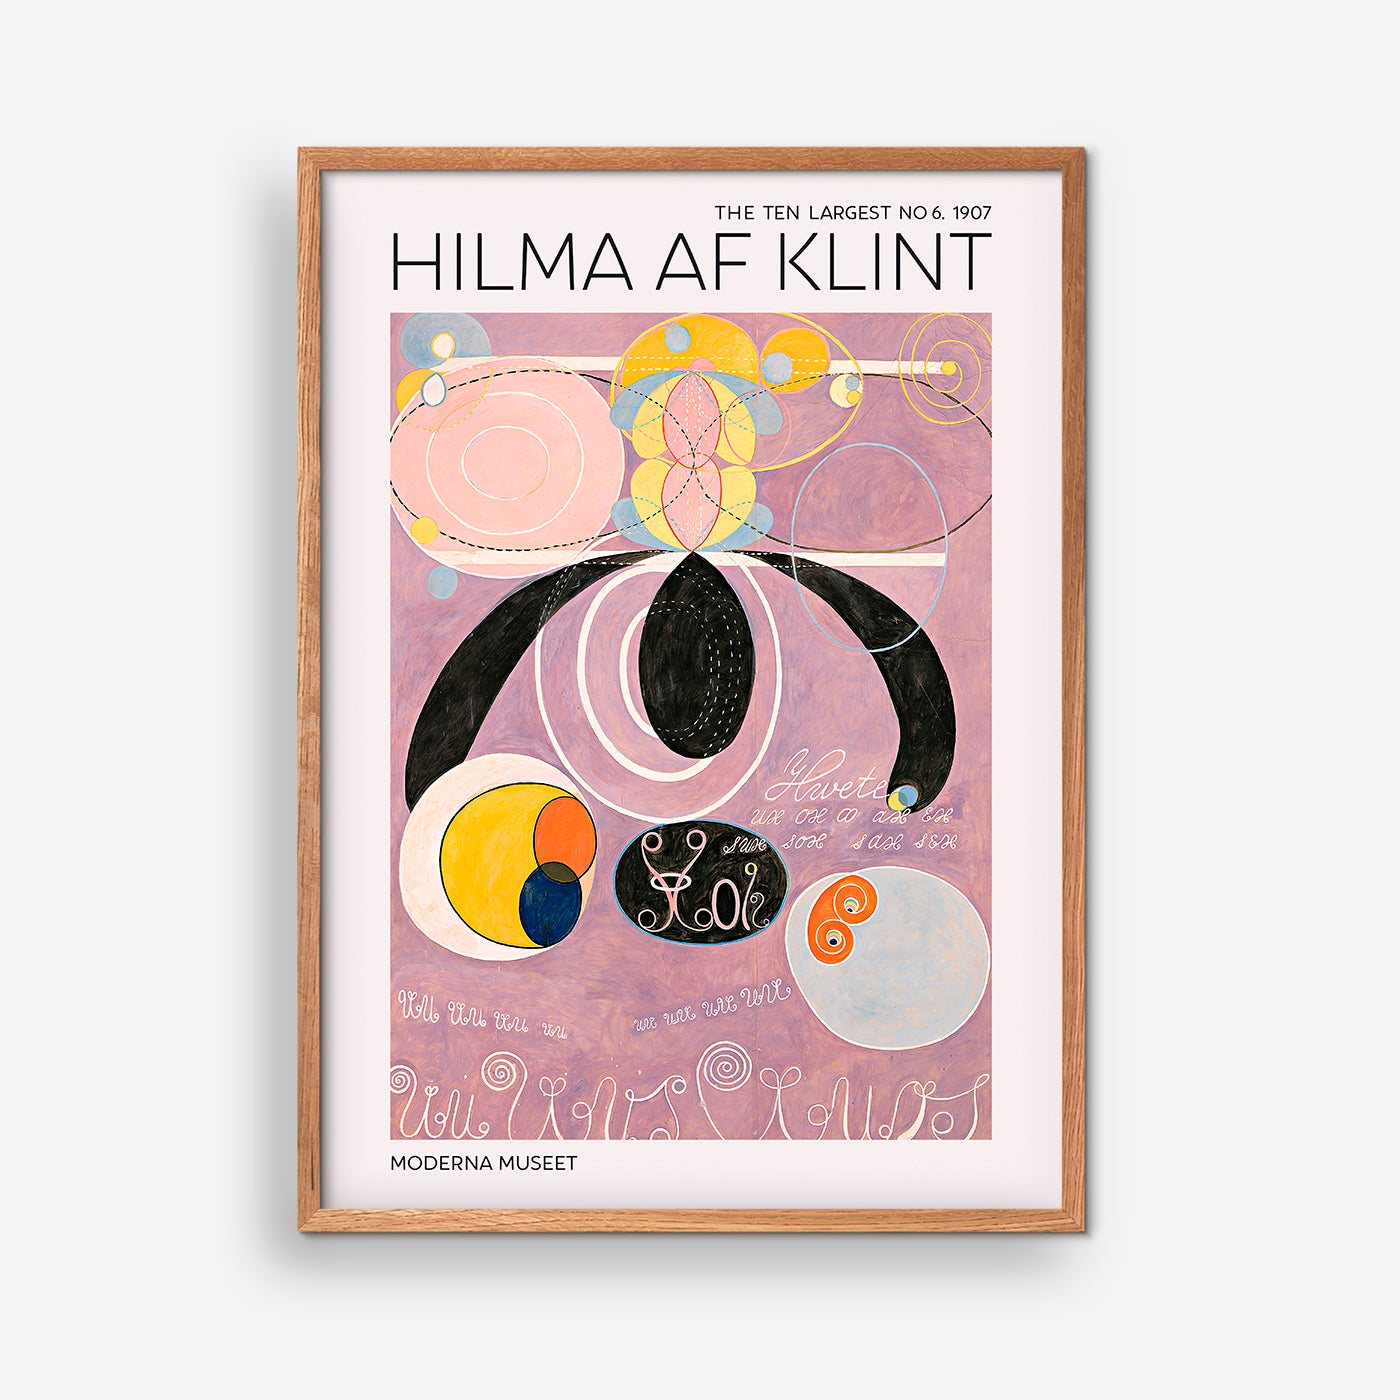 Hilma Af Klint - The Ten Largest NO. 6